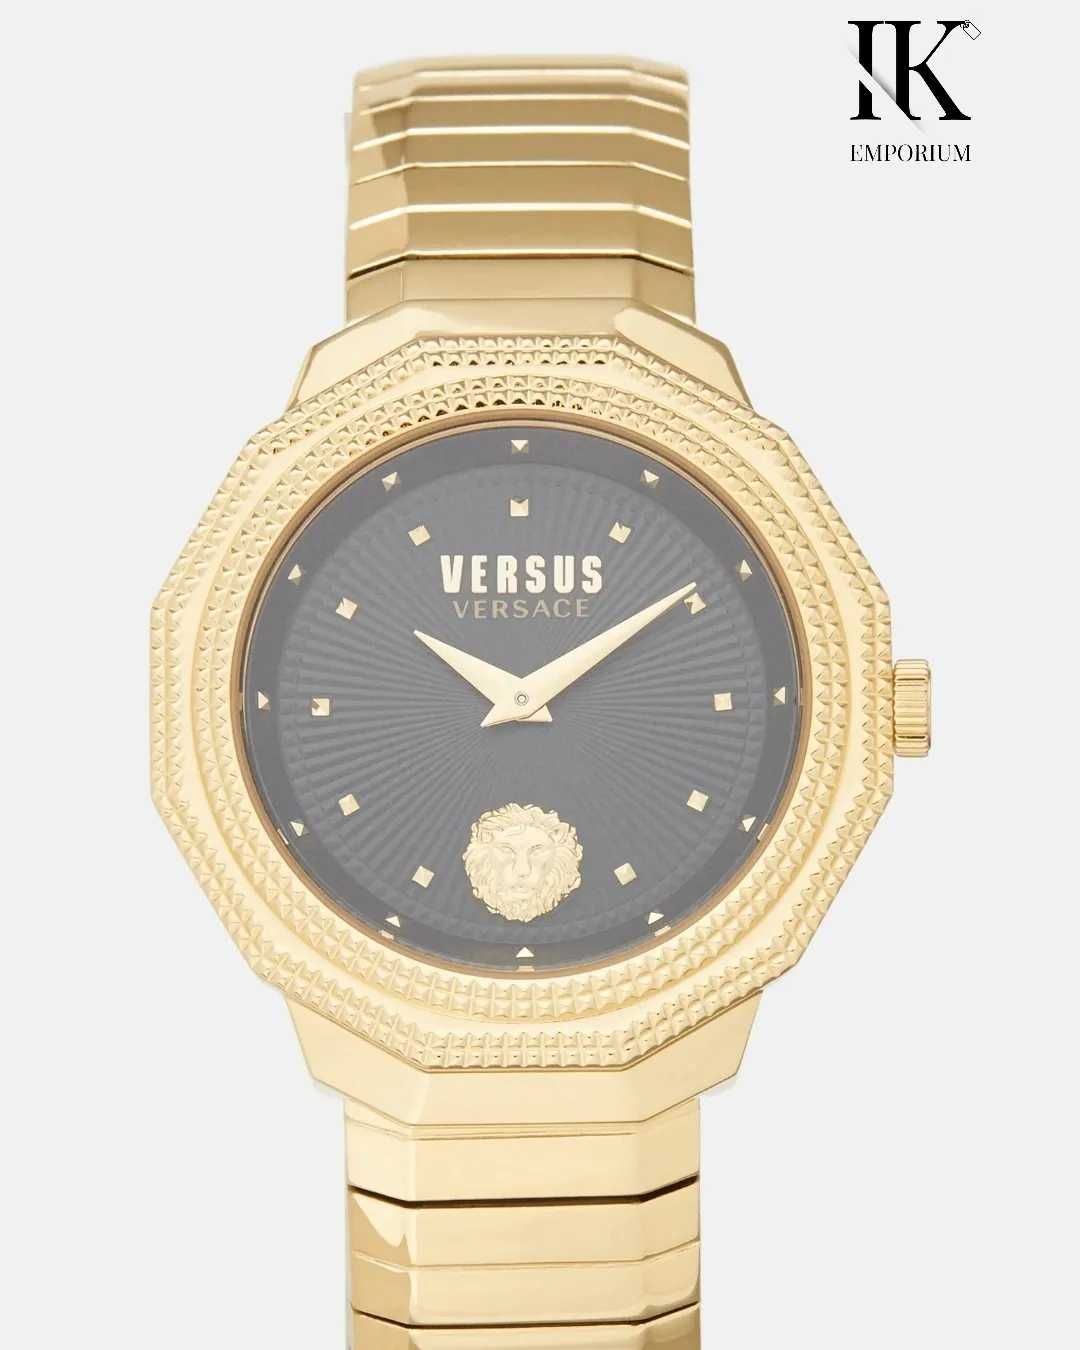 Жіночий годинник/Michael Kors/Versus Versace/Наручний/Женские часы